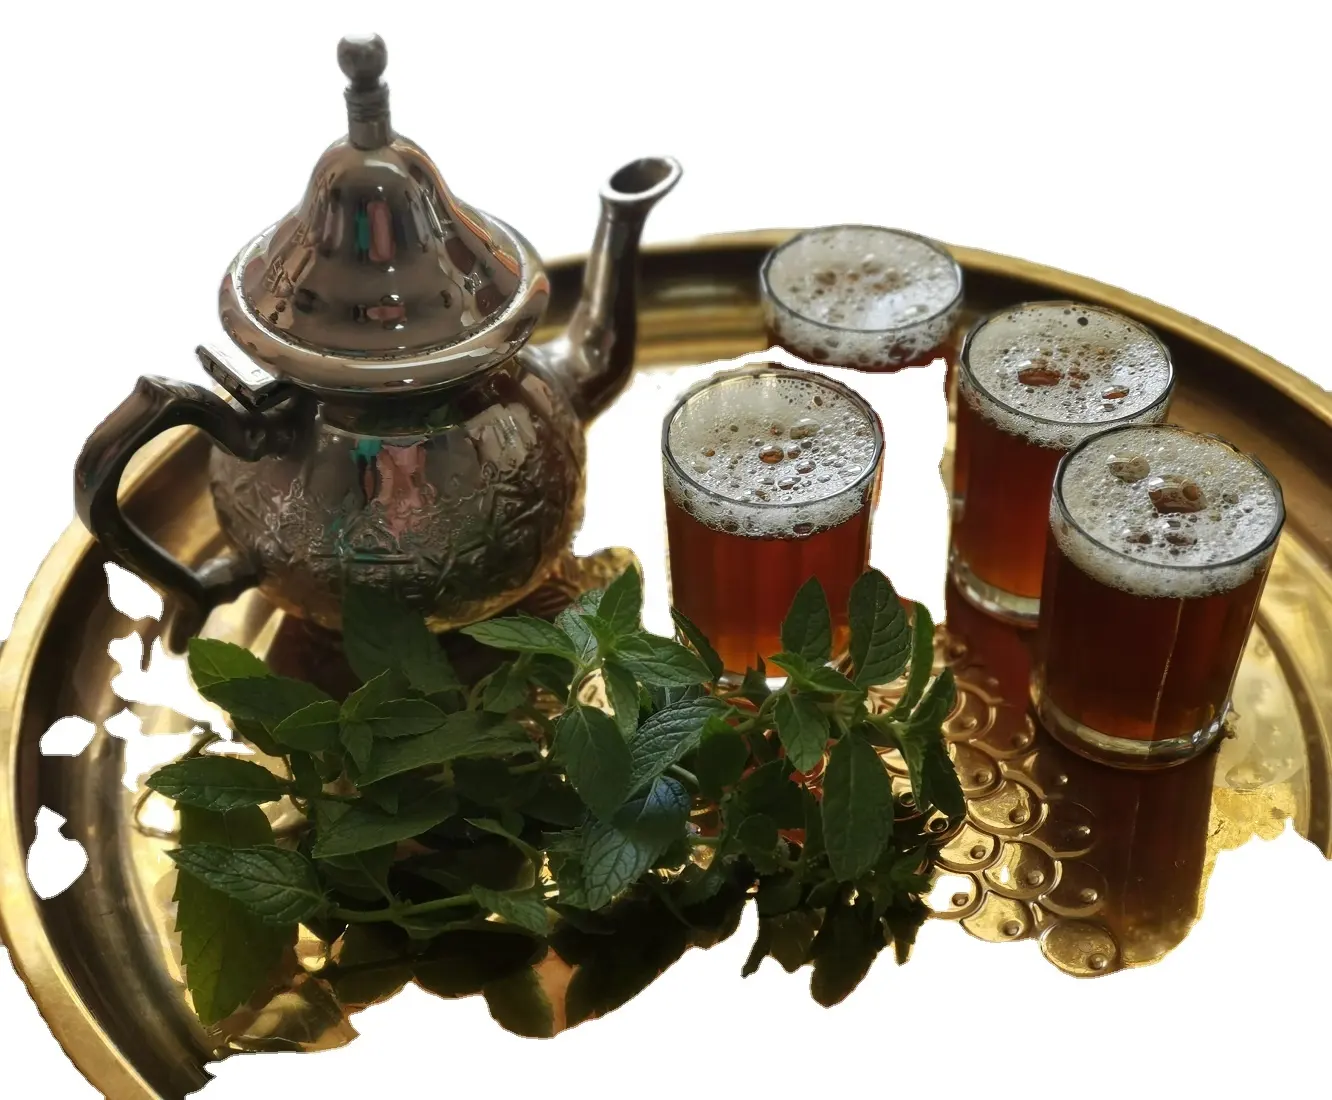 Чай Chunmee 9371 рассыпной чай с отличным вкусом, полезный для здоровья, объемная подарочная упаковка в пакетах и коробках для рынка Северной Африки